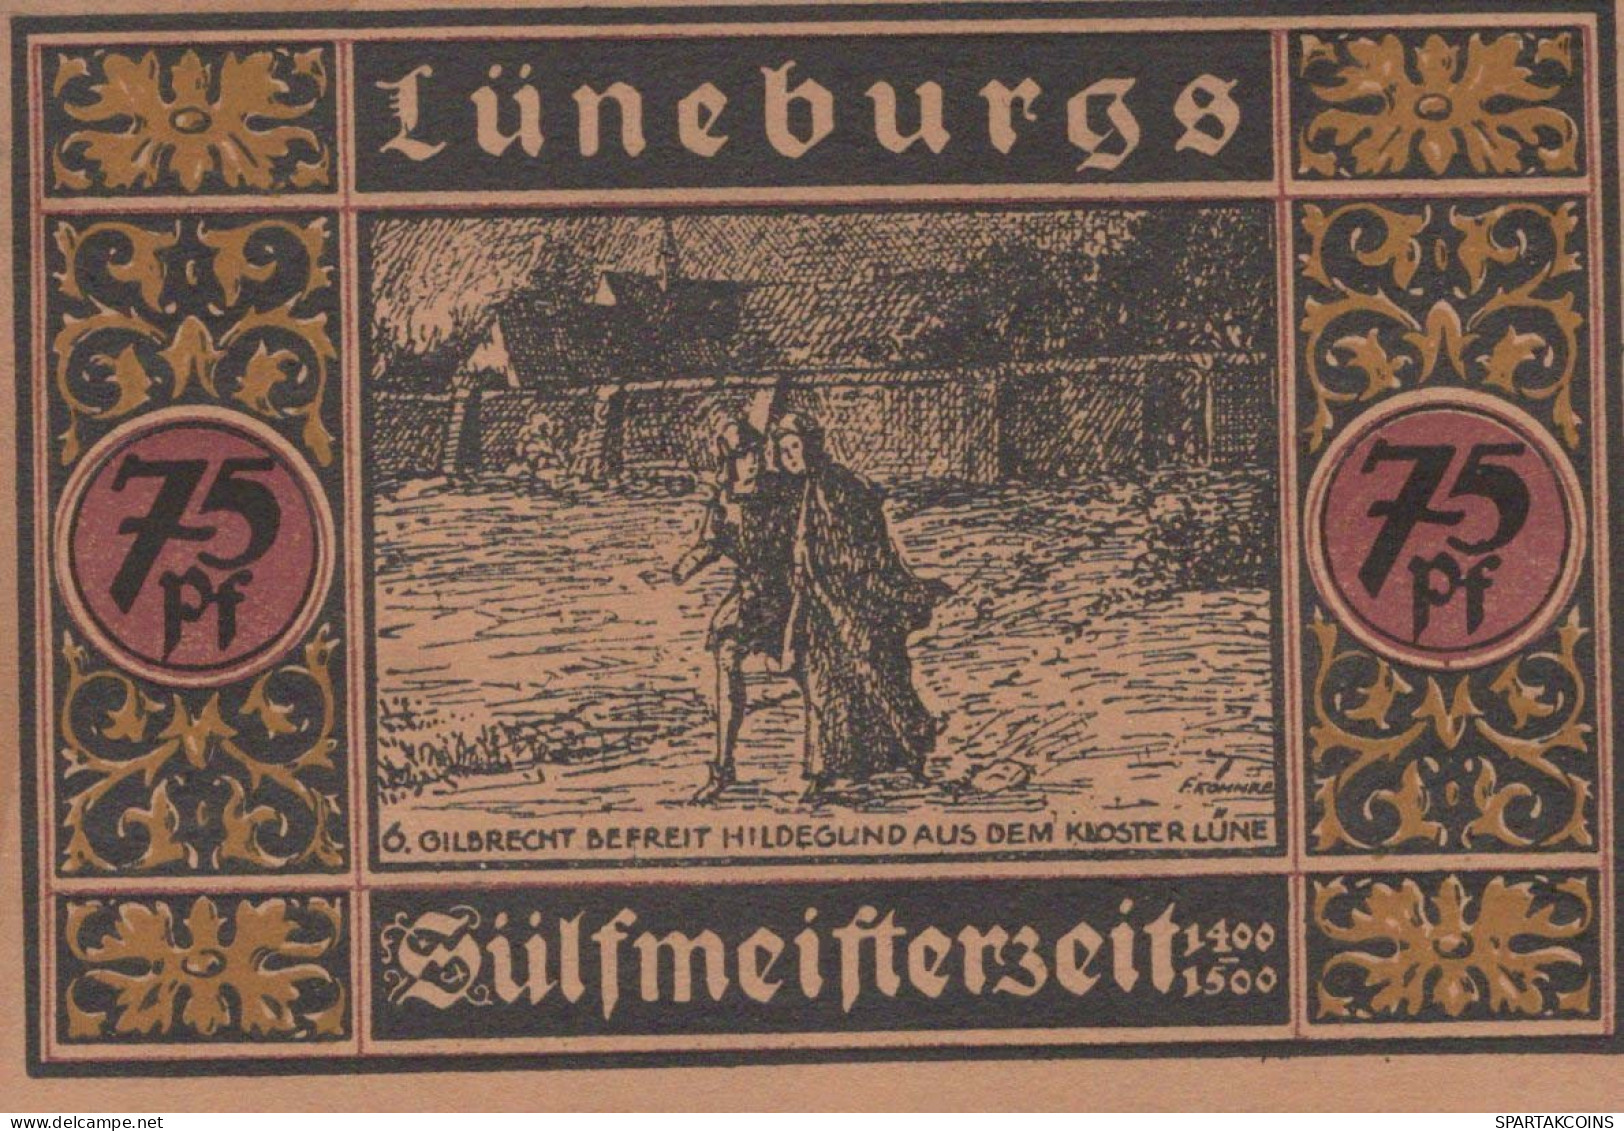 75 PFENNIG 1921 Stadt LÜNEBURG Hanover UNC DEUTSCHLAND Notgeld Banknote #PC644 - [11] Local Banknote Issues